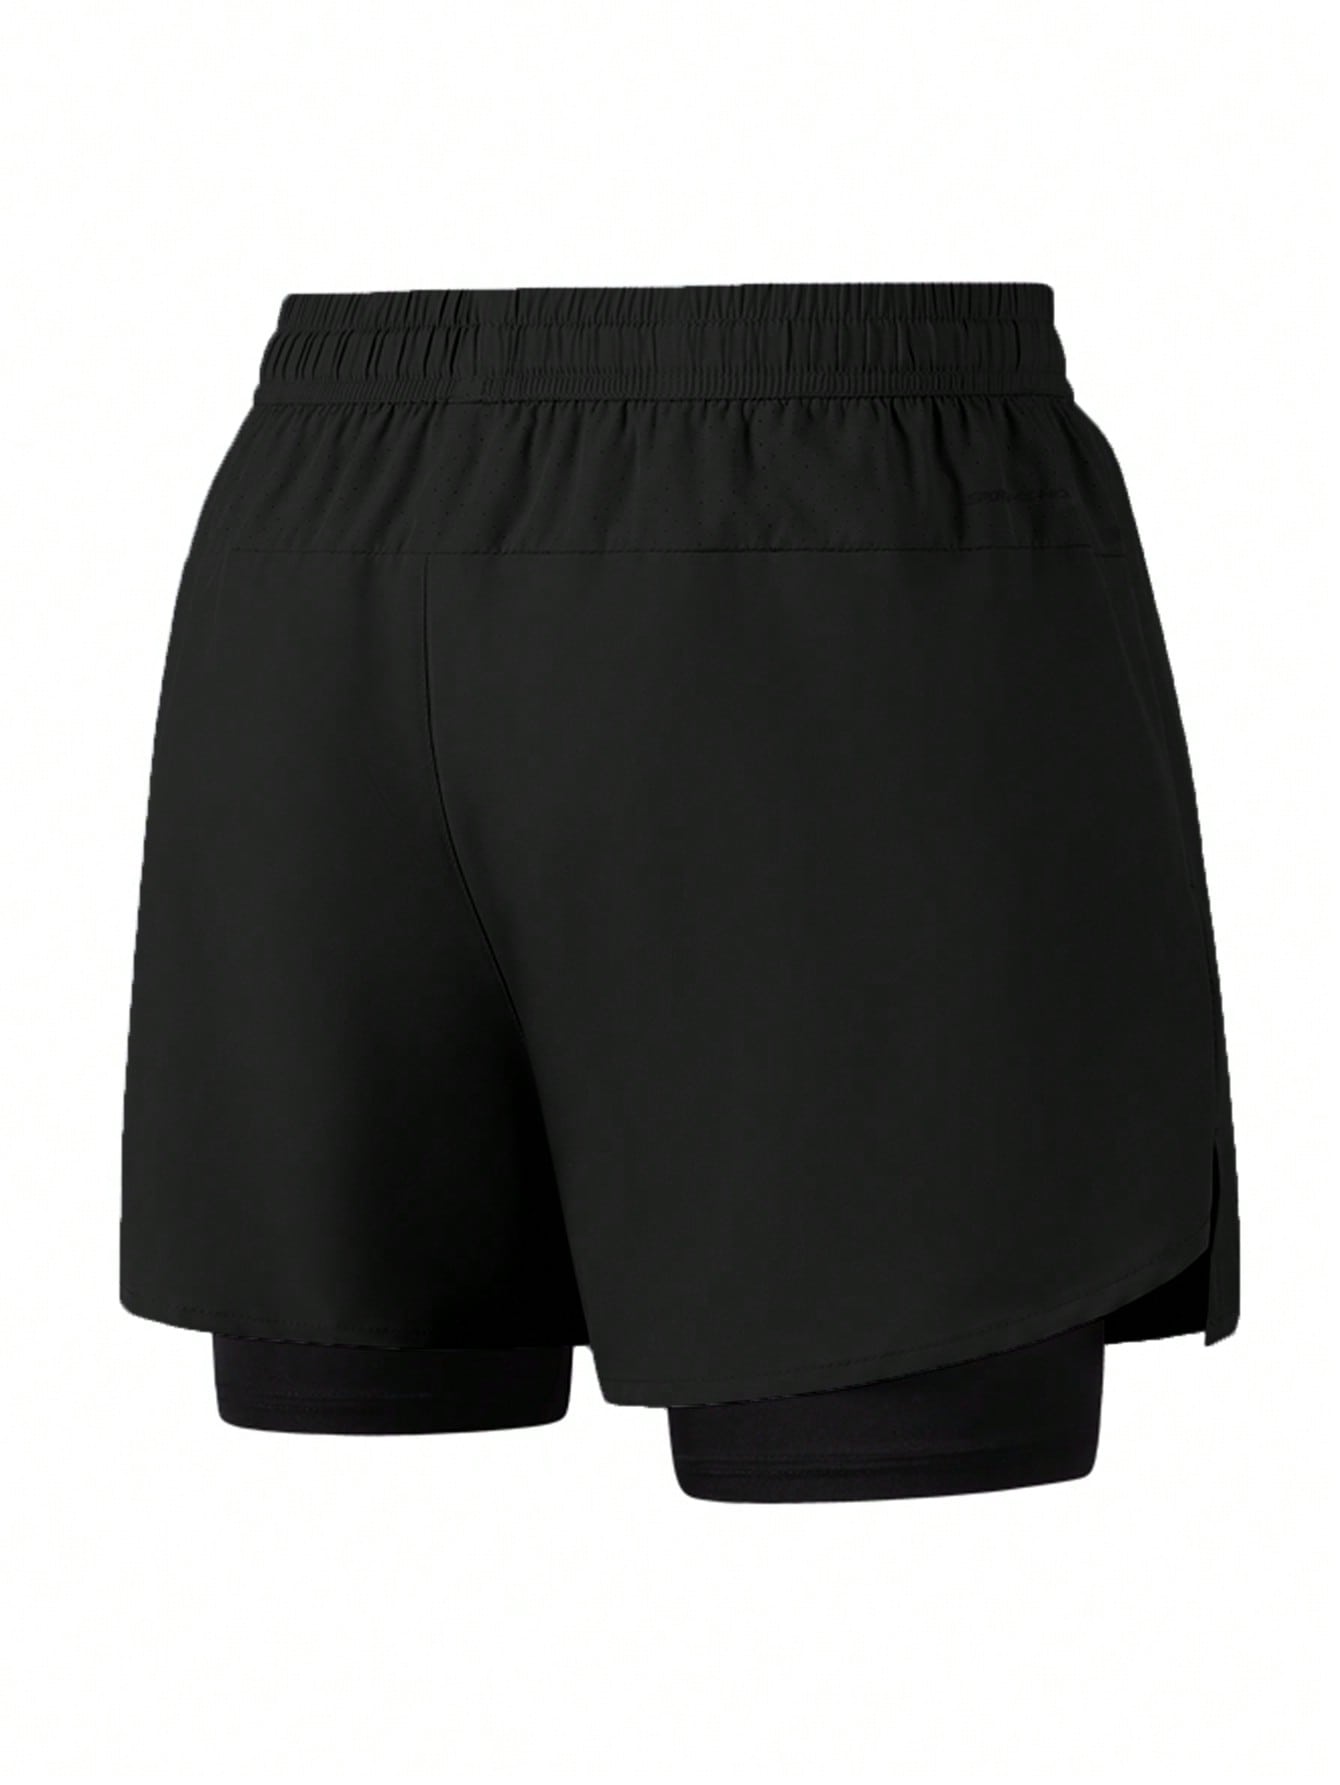 1 шт. Мужские быстросохнущие дышащие спортивные шорты из двух частей, черный фотографии